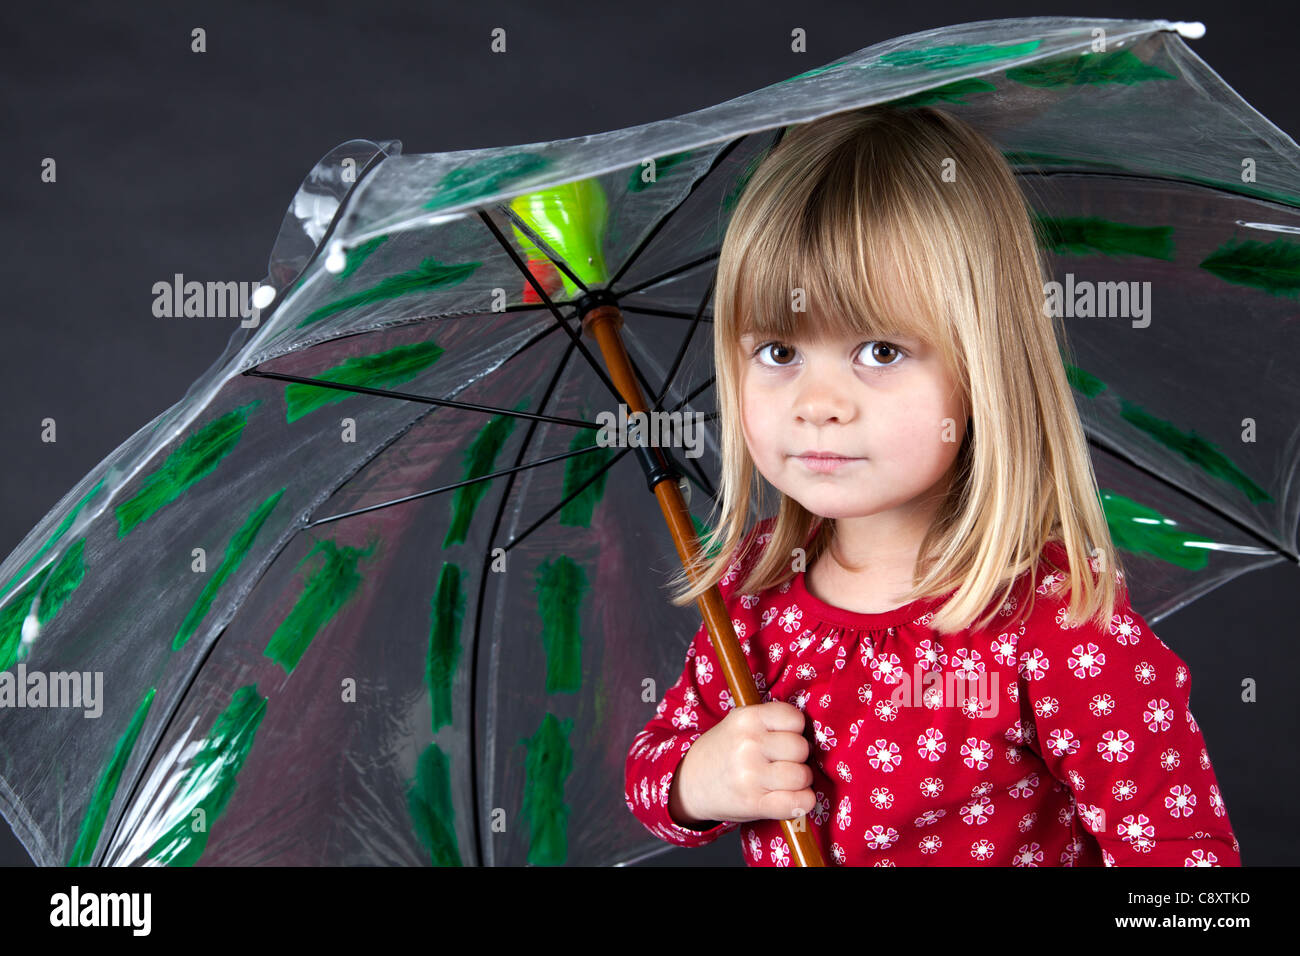 Petite fille rouge blanc à pois parapluie cavalier tête de canard sur fond noir s'amusant Banque D'Images